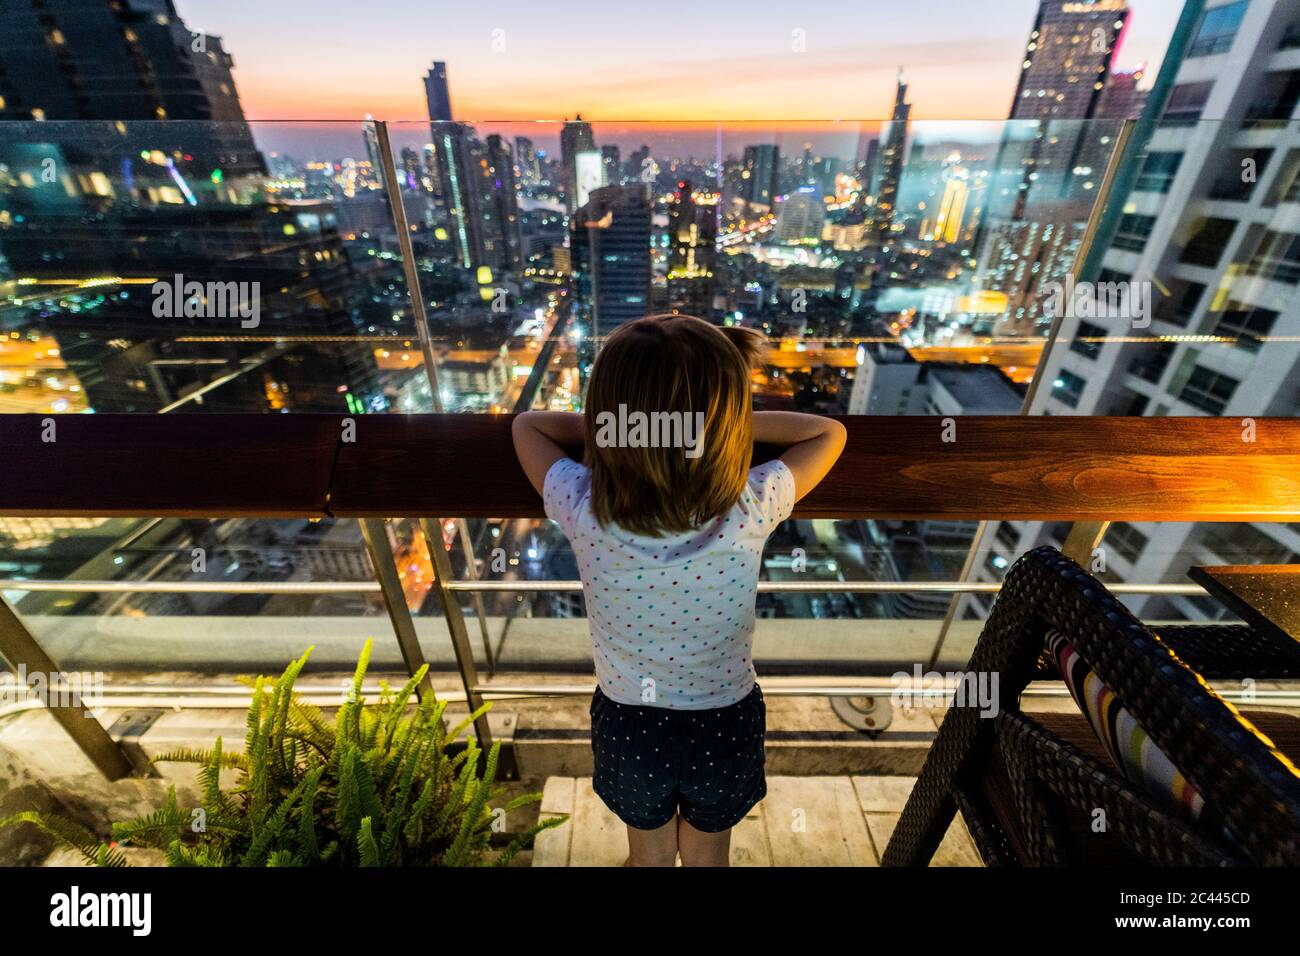 Girl looking at skyline of Bangkok at dusk, Thailand Stock Photo